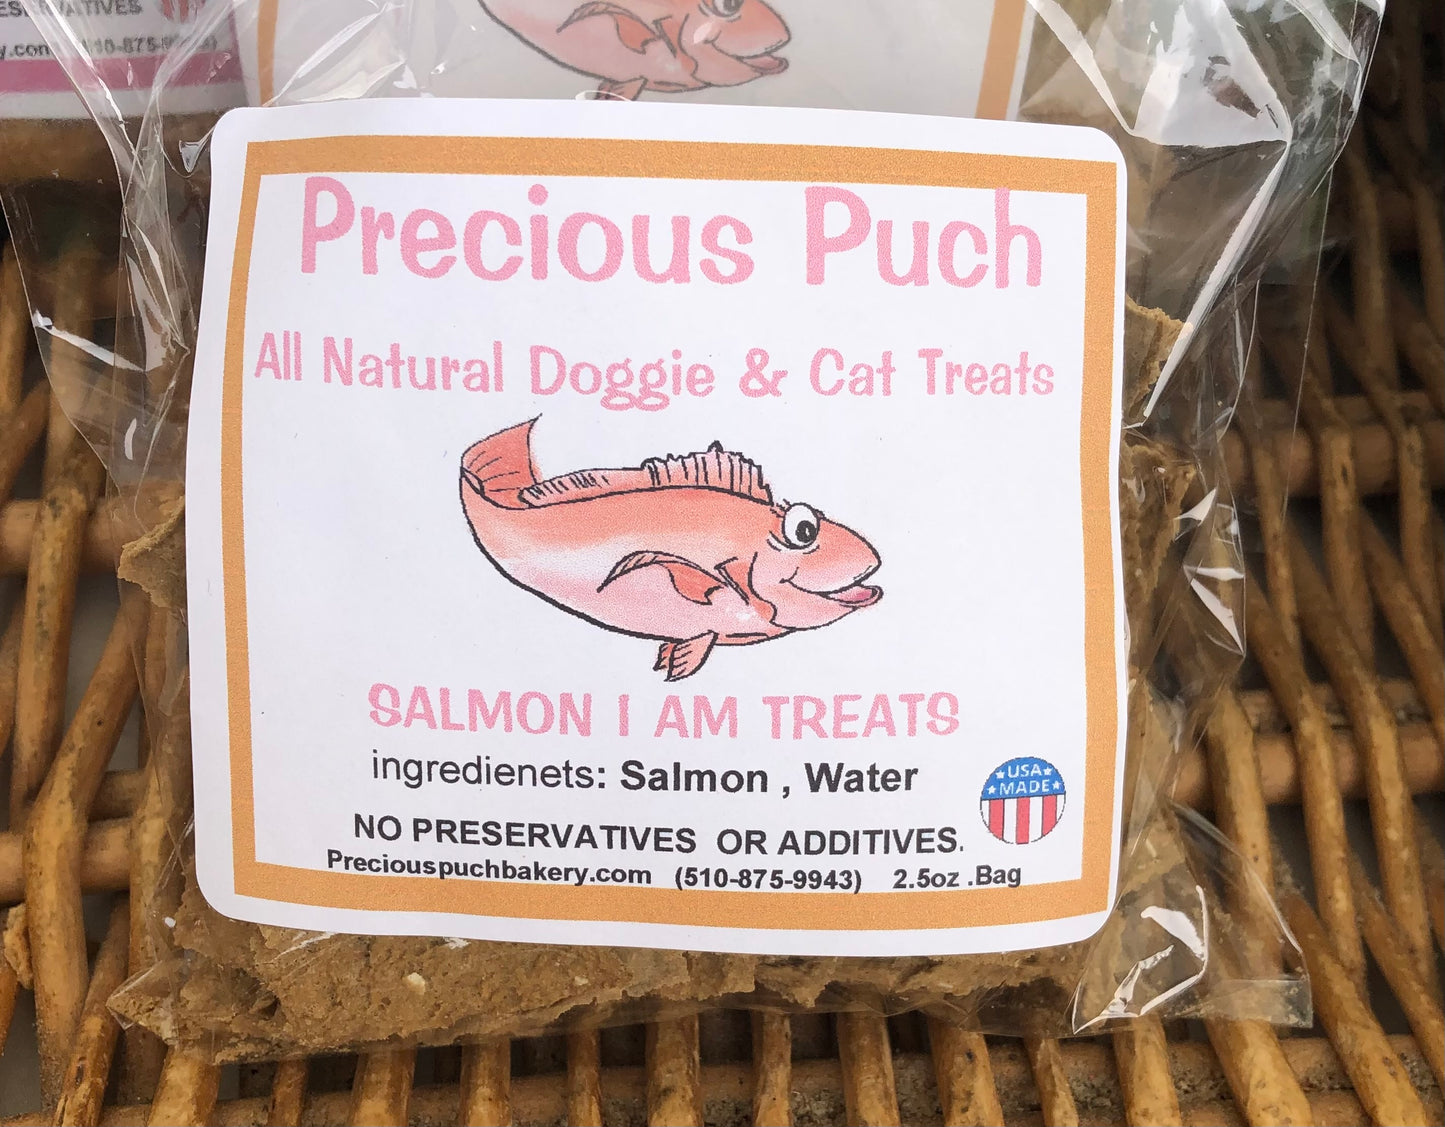 #(2) Salmon I am Dog and Cat Treats